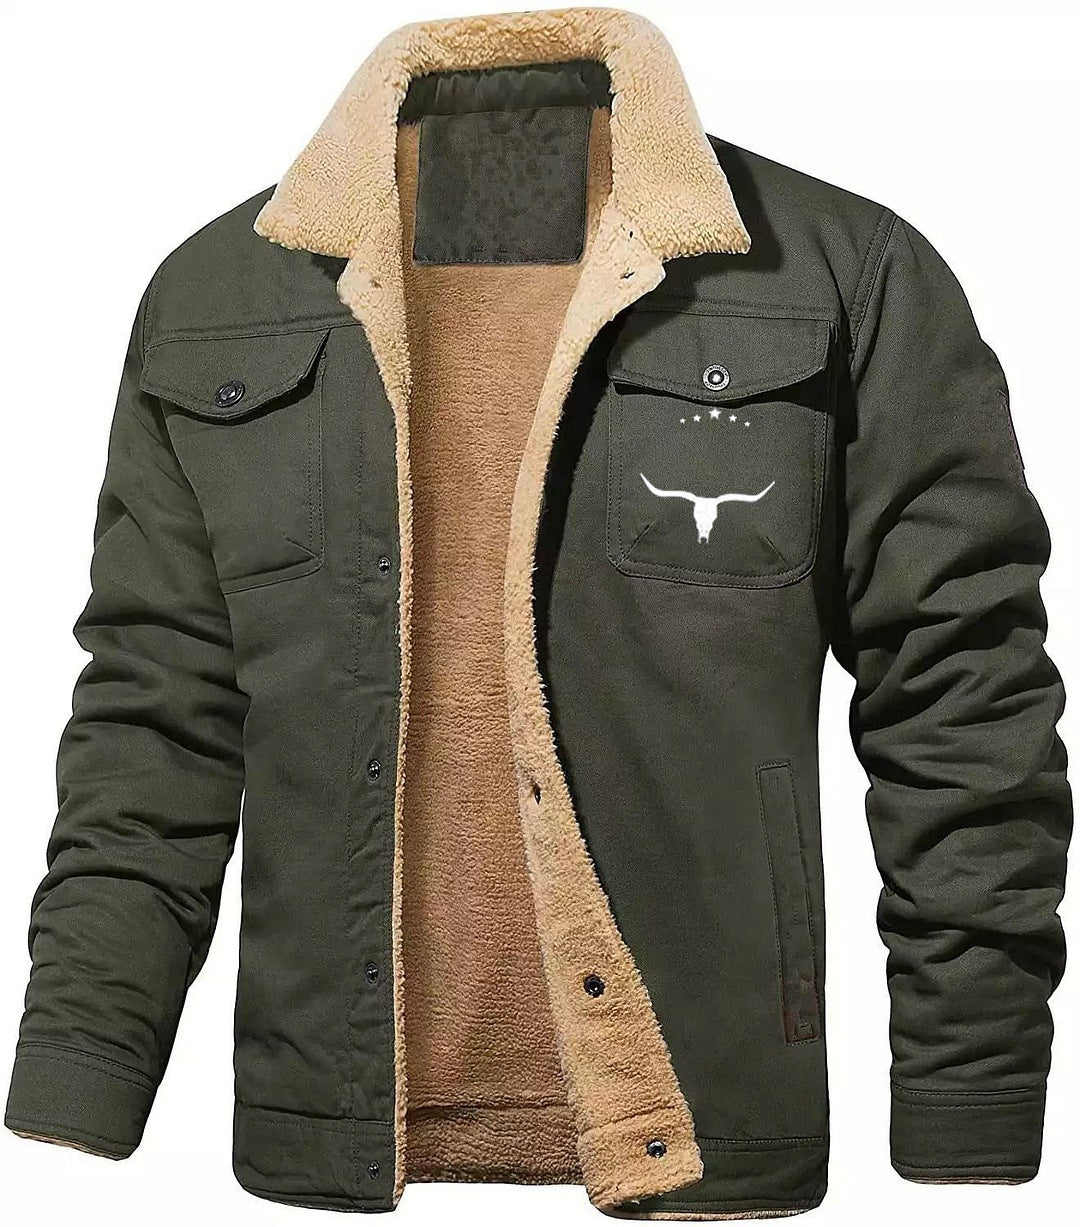 Men's Jacket Fleece-lined Cotton Workwear Casual Jacket Men's Coat